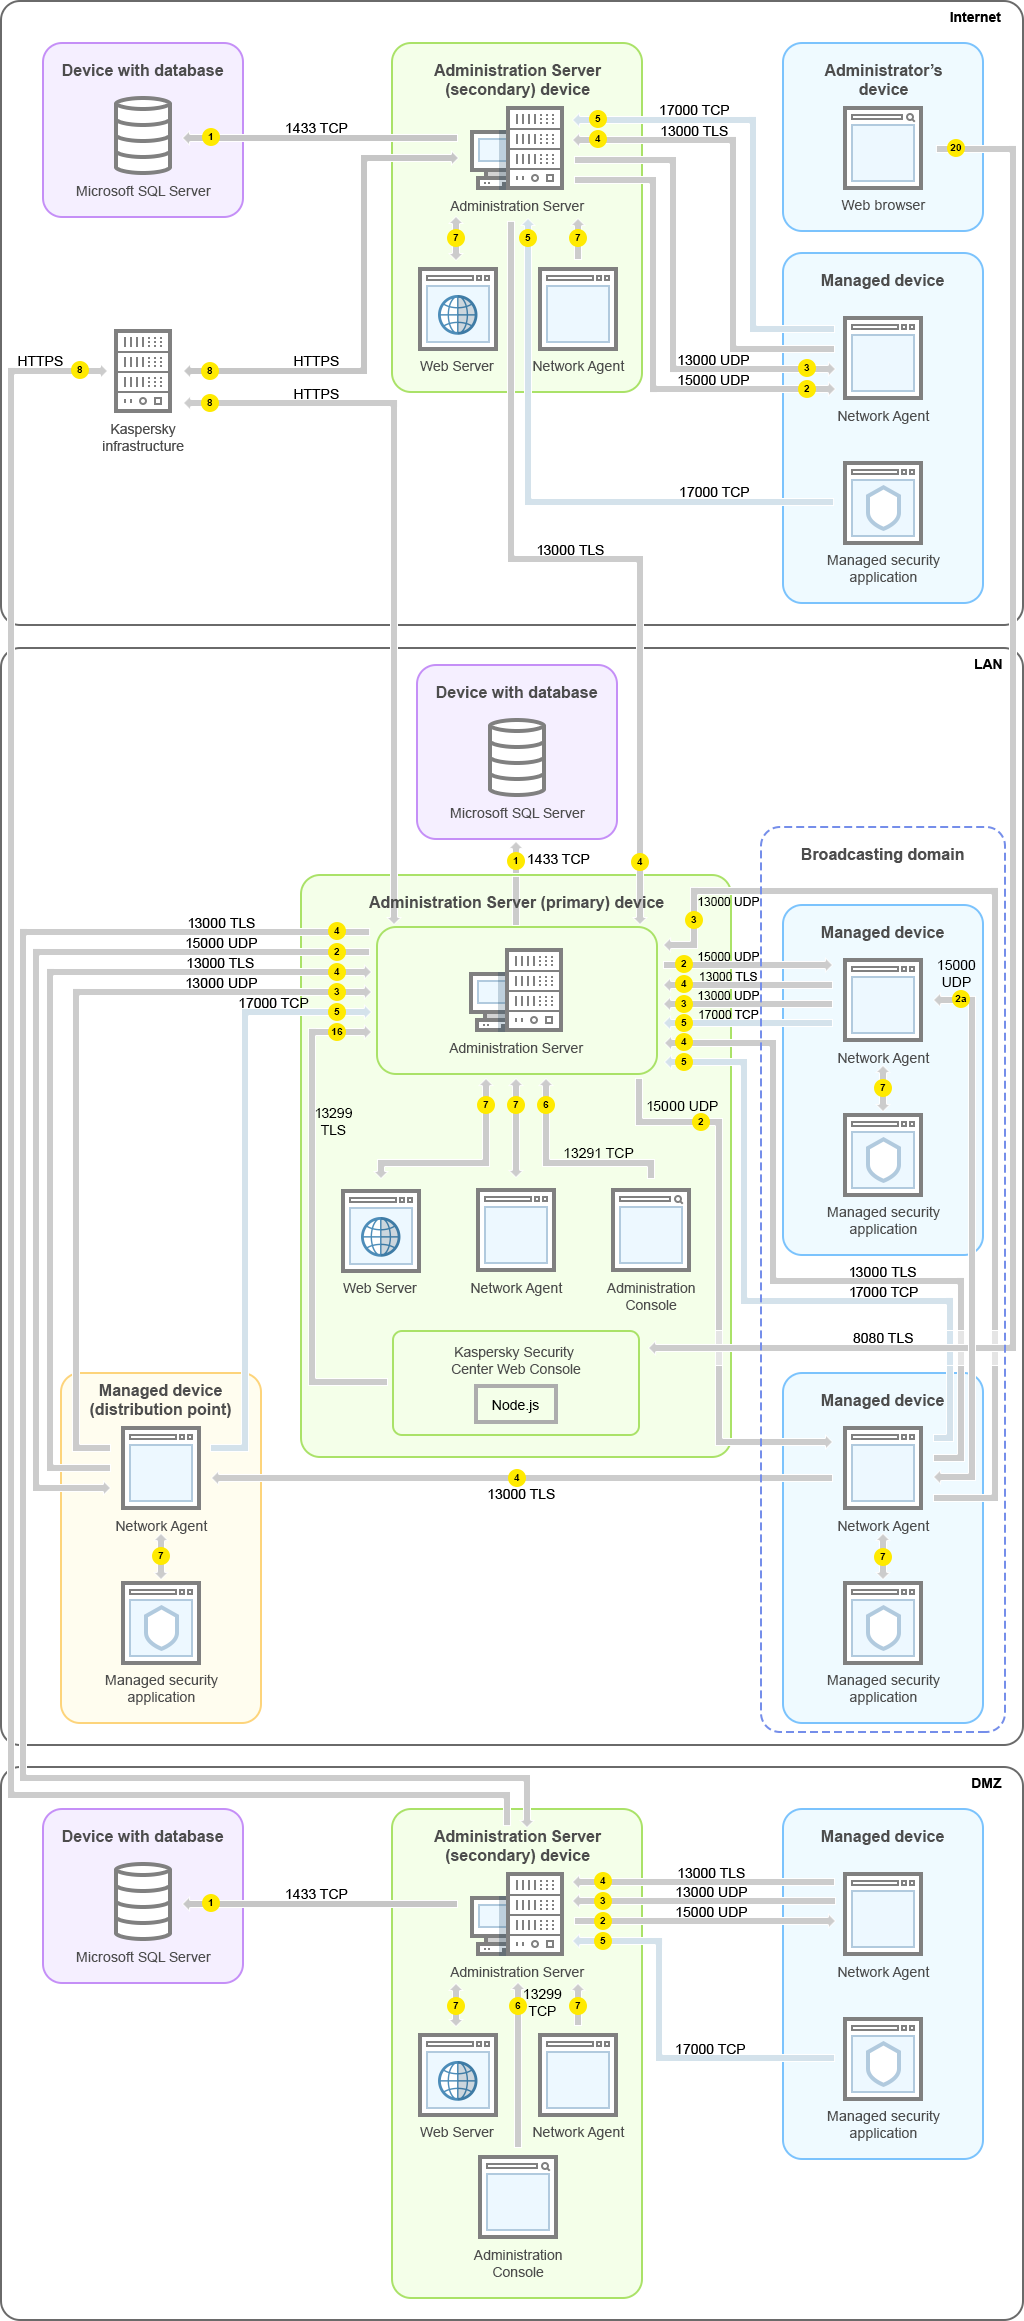 L'Administration Server primario e i relativi dispositivi gestiti si trovano su una rete LAN, un Administration Server secondario e i relativi dispositivi gestiti si trovano nella DMZ, un altro Administration Server secondario, i relativi dispositivi gestiti e un dispositivo dell'amministratore si trovano su Internet.